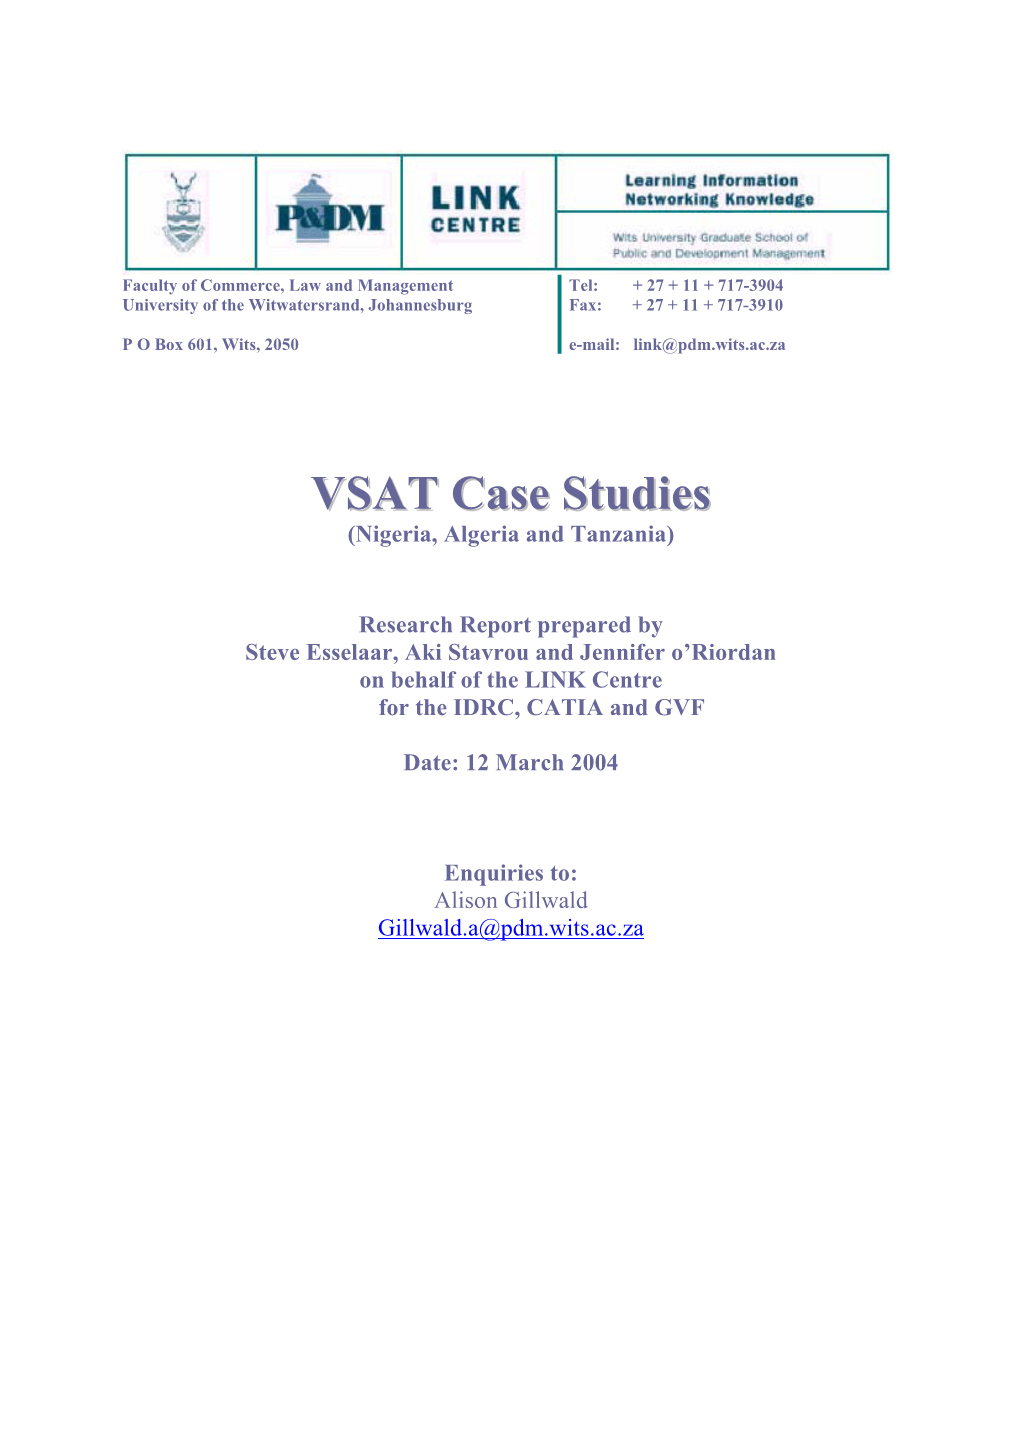 VSAT Case Studies